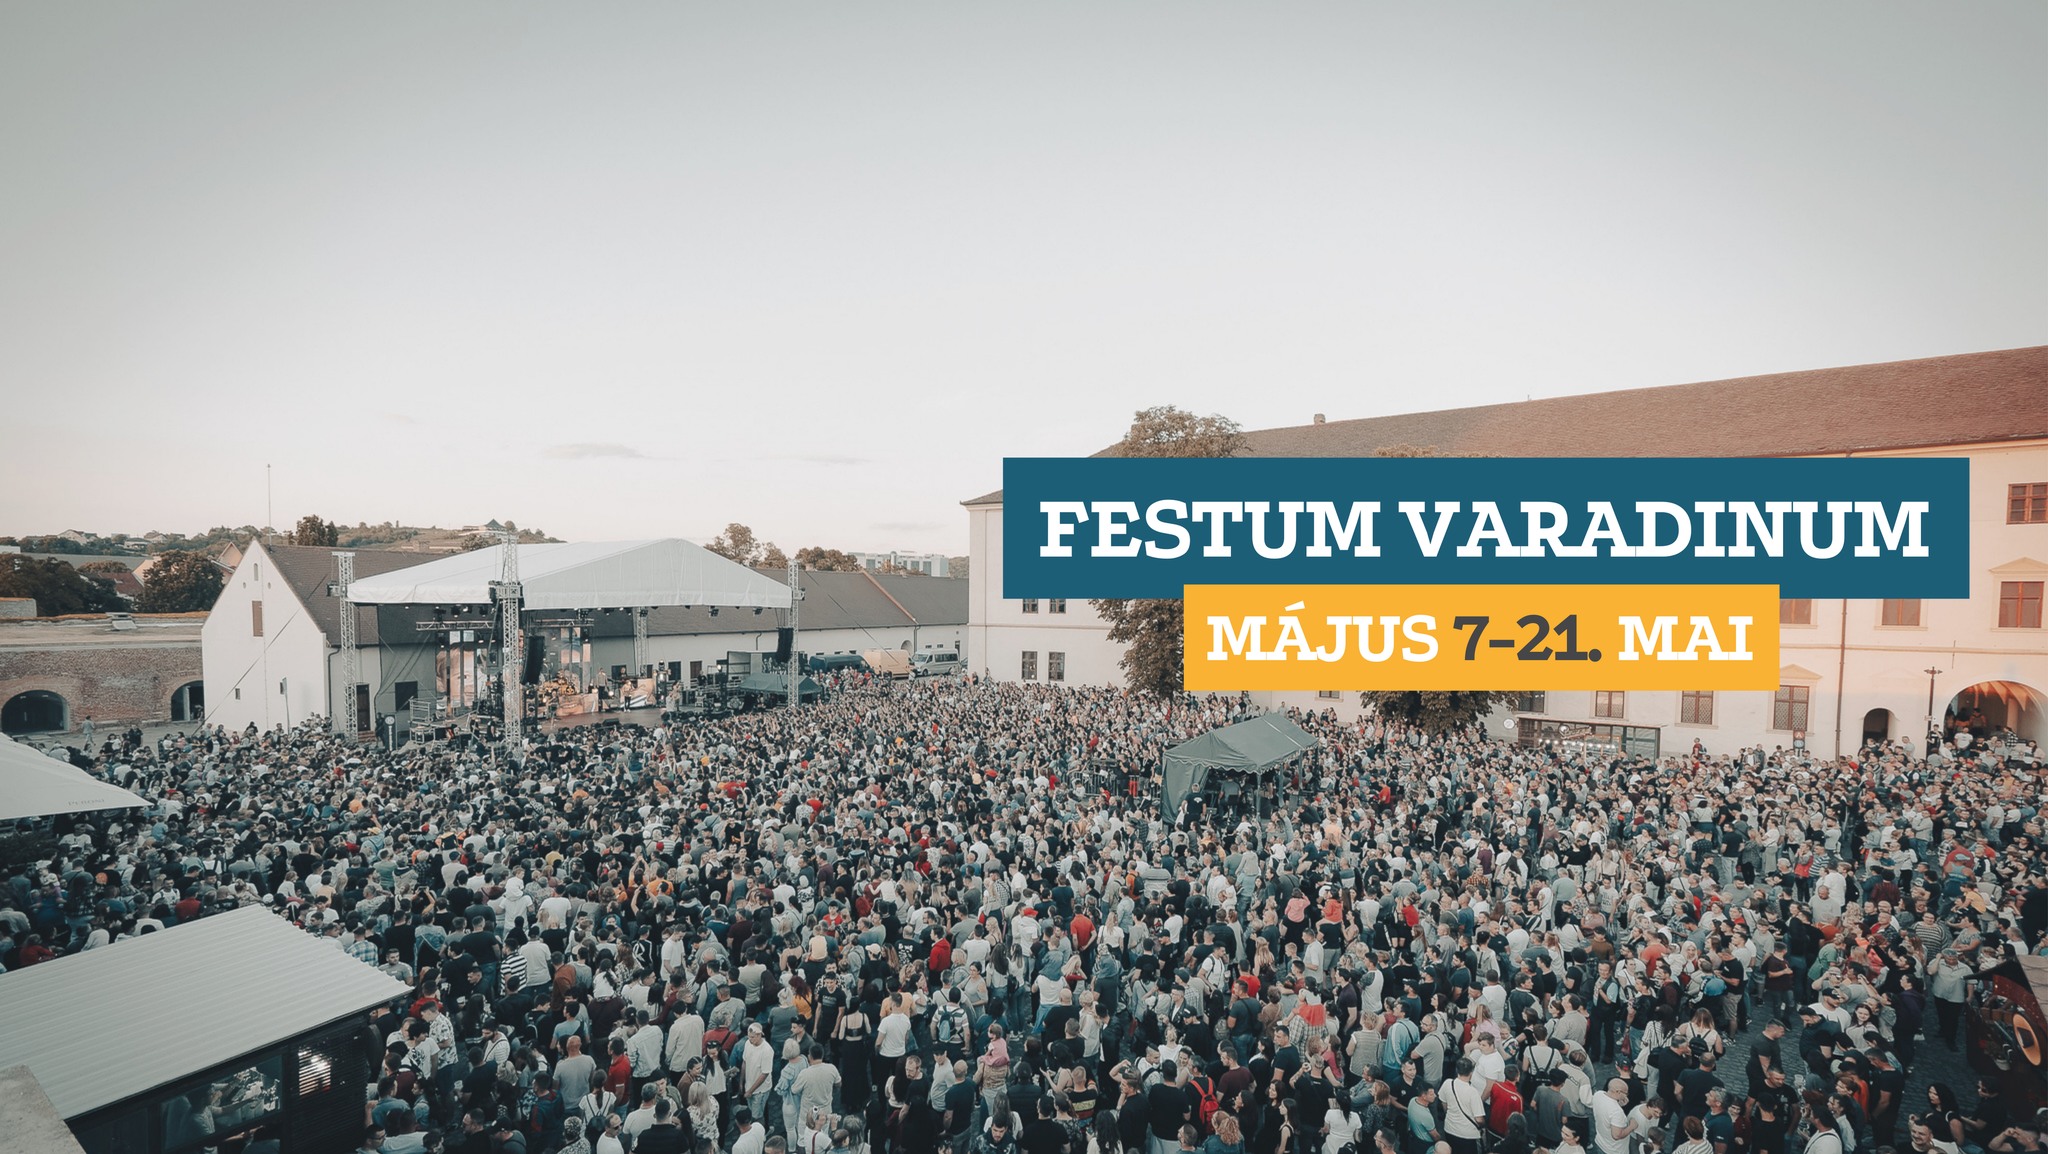 Javában zajlik a Festum Varadinum – több mint 220 programpont közül válogathatunk